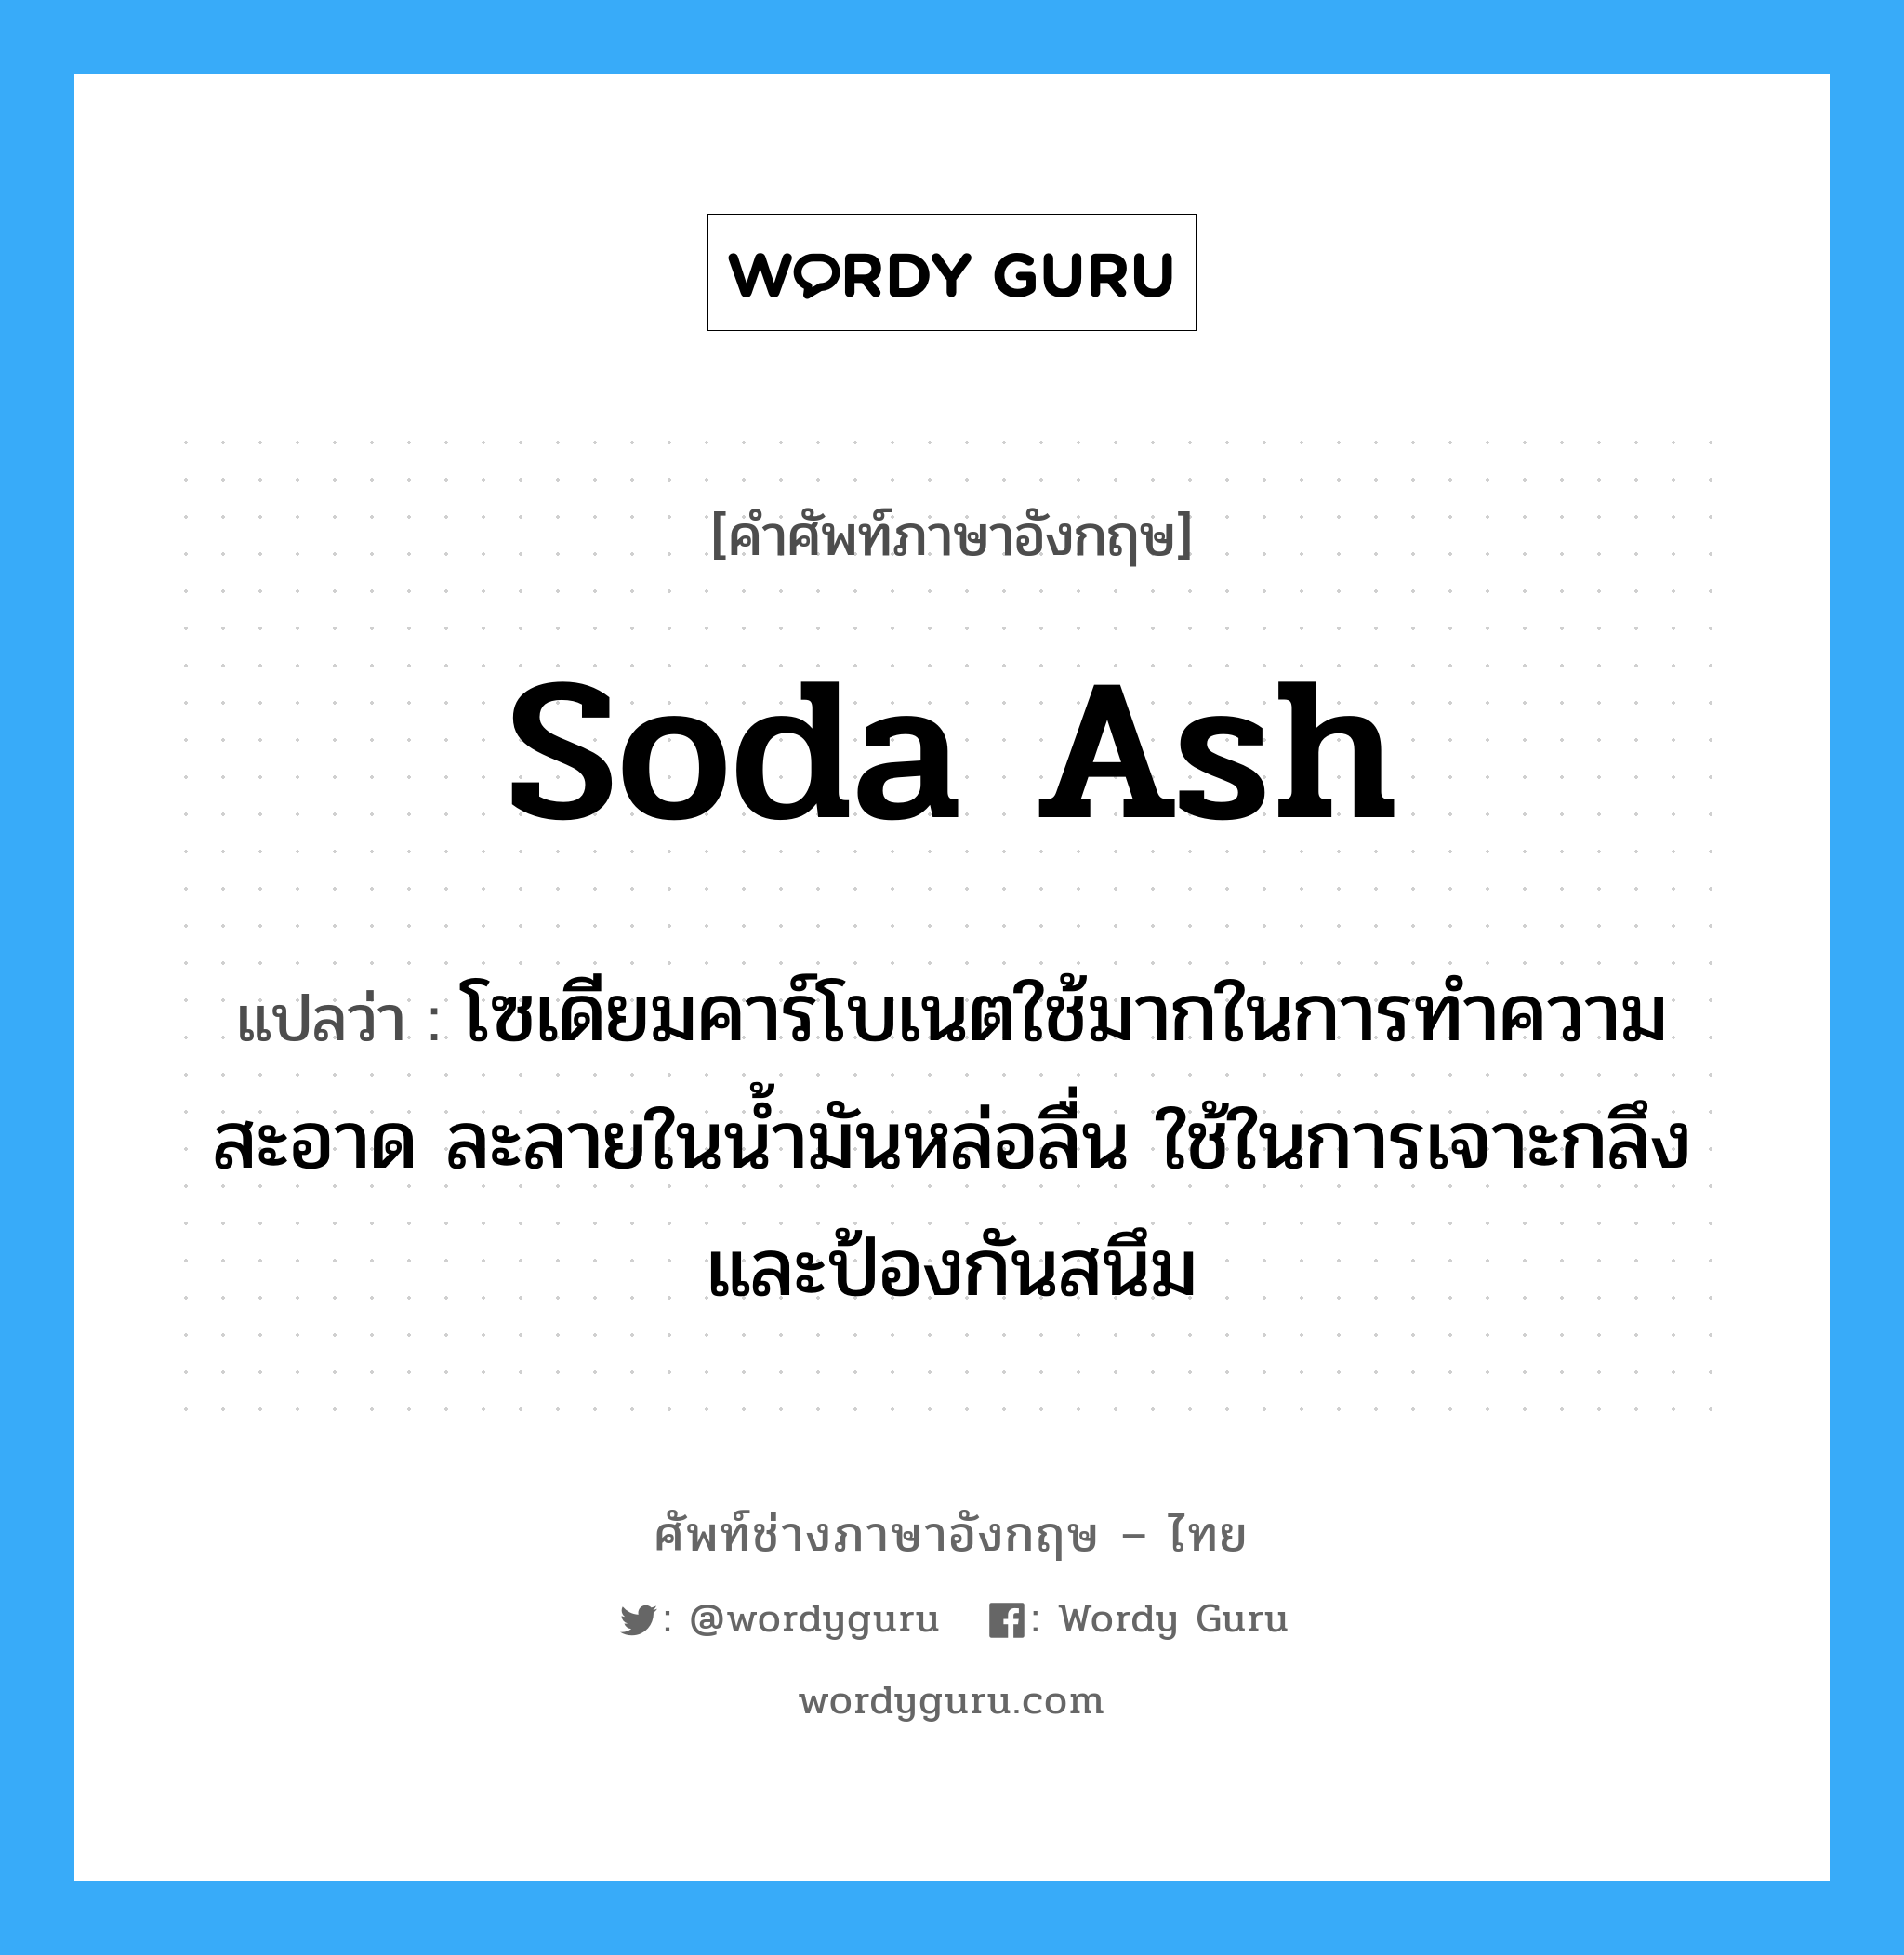 soda ash แปลว่า?, คำศัพท์ช่างภาษาอังกฤษ - ไทย soda ash คำศัพท์ภาษาอังกฤษ soda ash แปลว่า โซเดียมคาร์โบเนตใช้มากในการทำความสะอาด ละลายในน้ำมันหล่อลื่น ใช้ในการเจาะกลึง และป้องกันสนึม